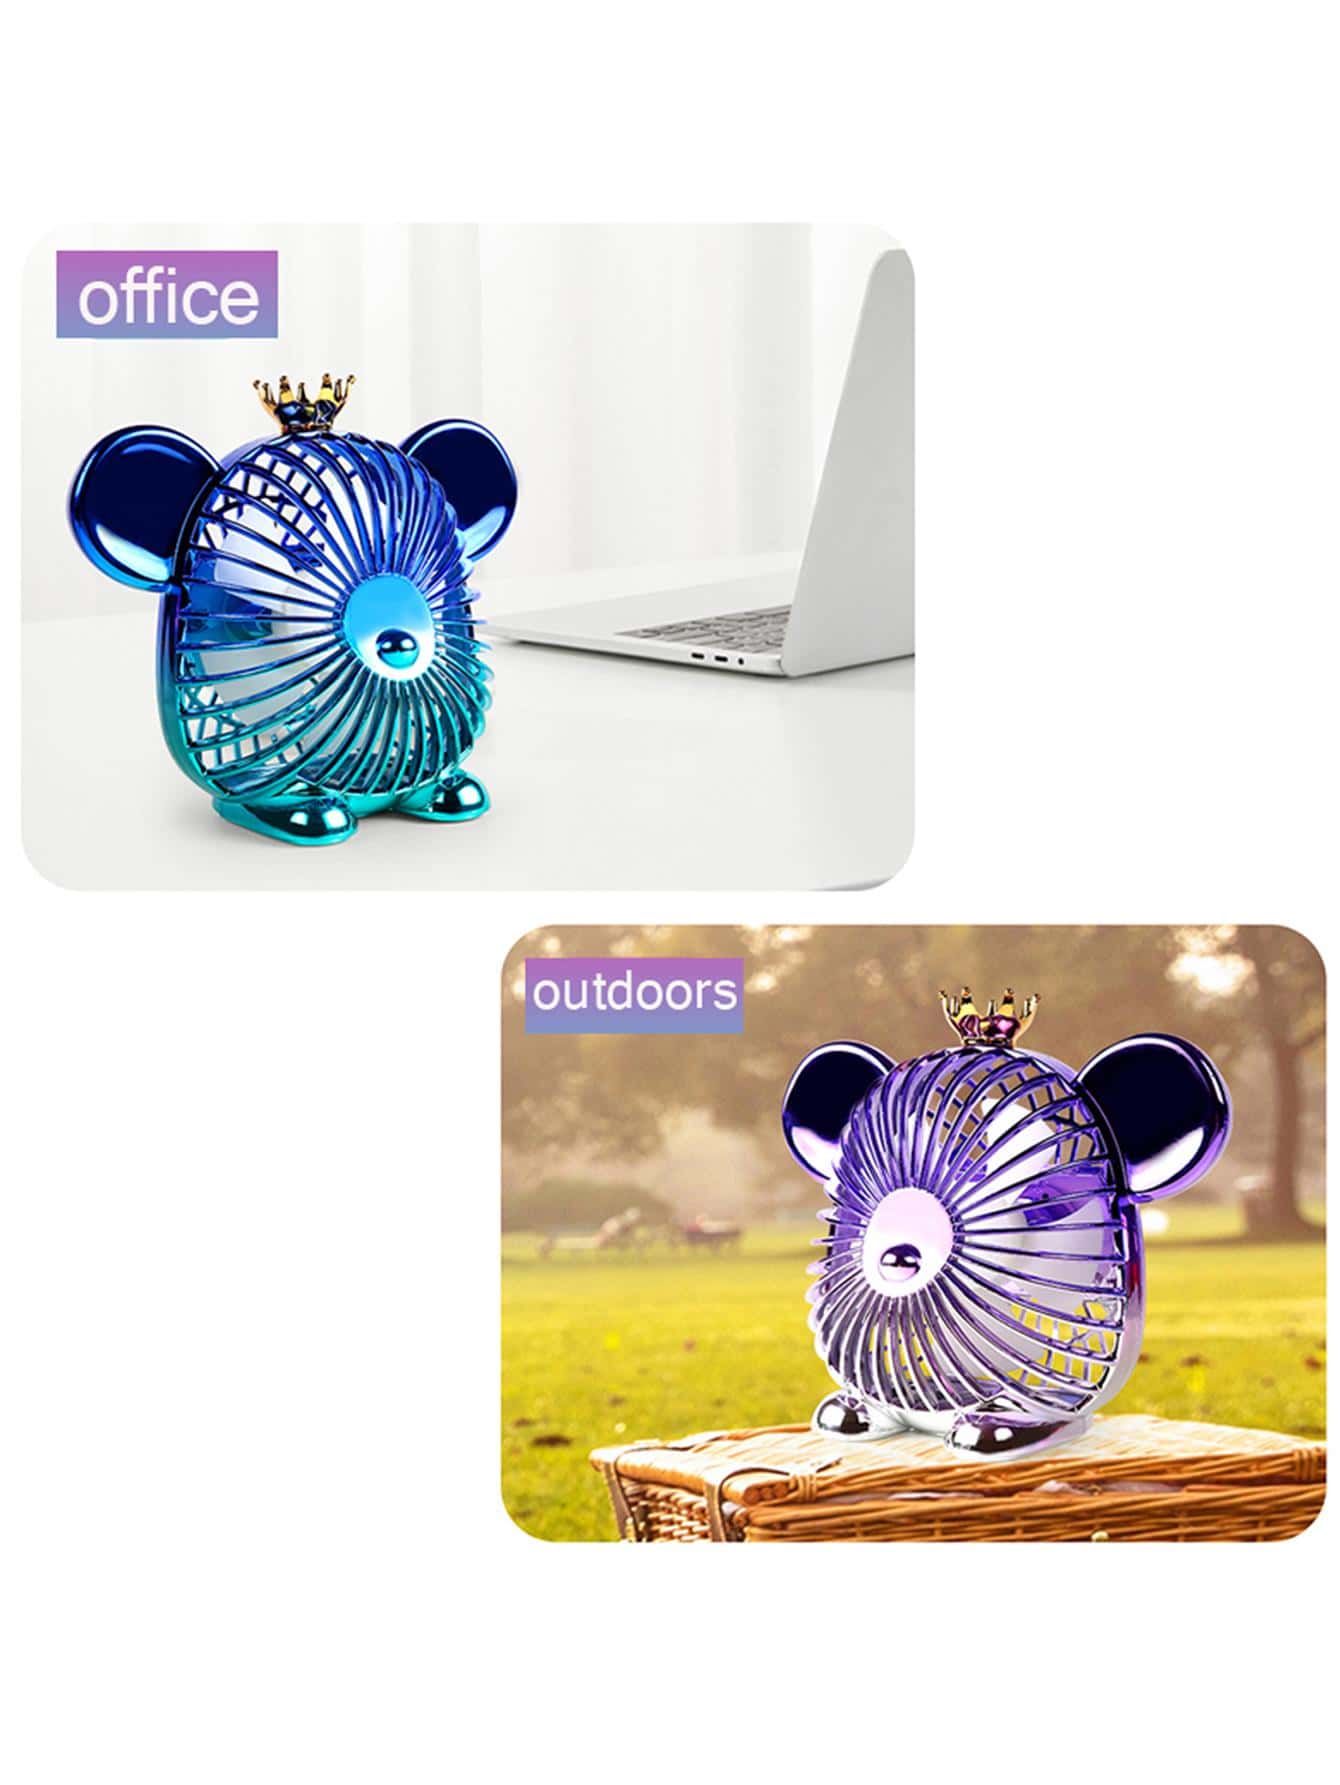 1pc Portable Rechargeable Plastic Desk Fan, Creative Purple Bear Head Design Desktop Fan For Home